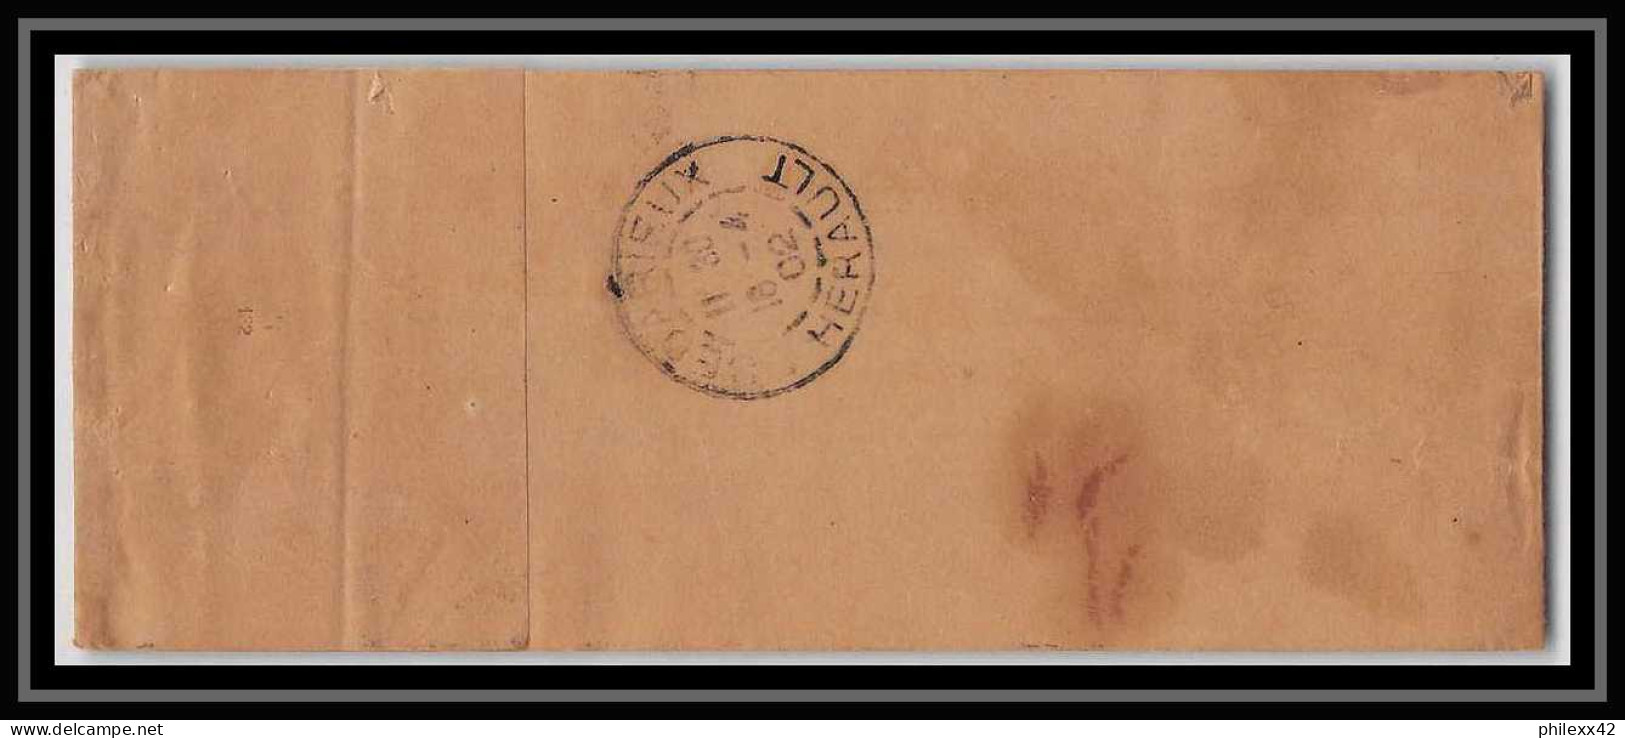 4736 2c Blanc + Complement Sage Affranchissement Bedarieux Herault 1902 Bande Journal France Entier Postal Stationery - Newspaper Bands